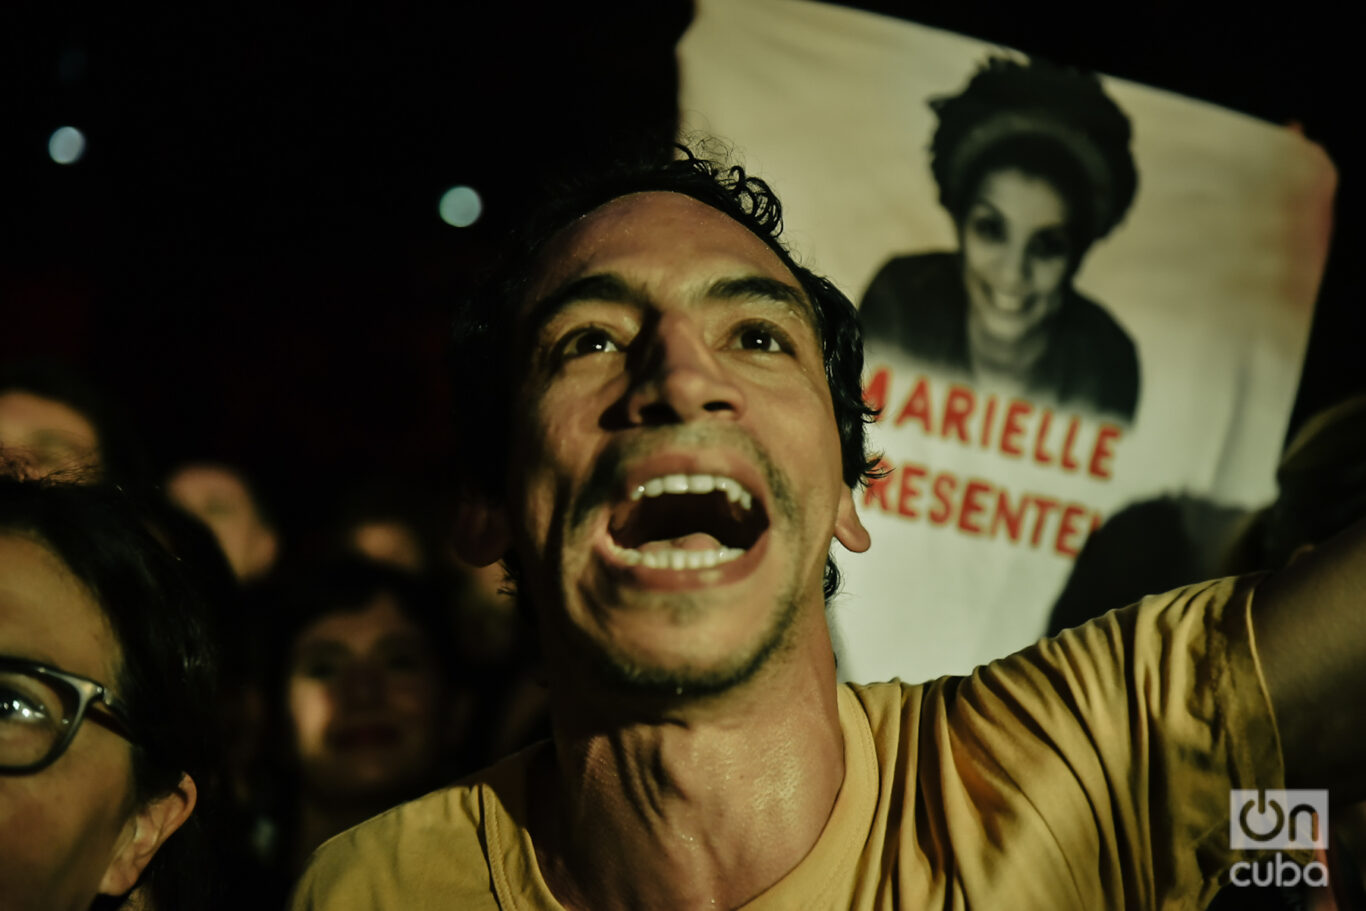 El público deliró con Manu Chao durante toda la noche. Levantaron banderas y carteles como este pulóver recordando a Marielle Franco, militante brasileña de los derechos humanos, asesinada en 2018. Foto: Kaloian.